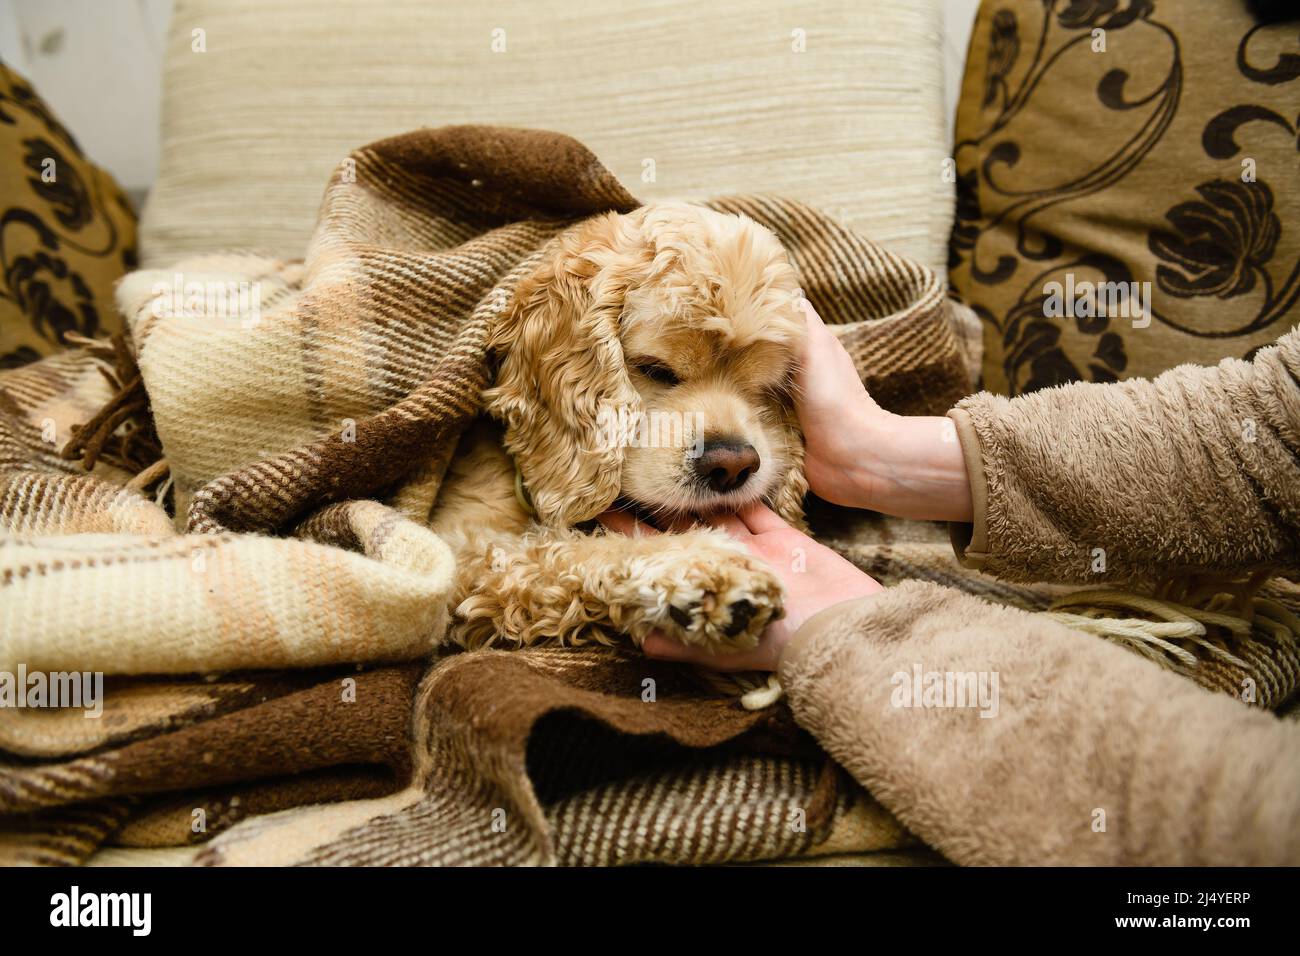 Ein amerikanischer Cocker Spaniel liegt auf einer in eine Decke gehüllten  Couch. Hund leckt weibliche Hände Stockfotografie - Alamy